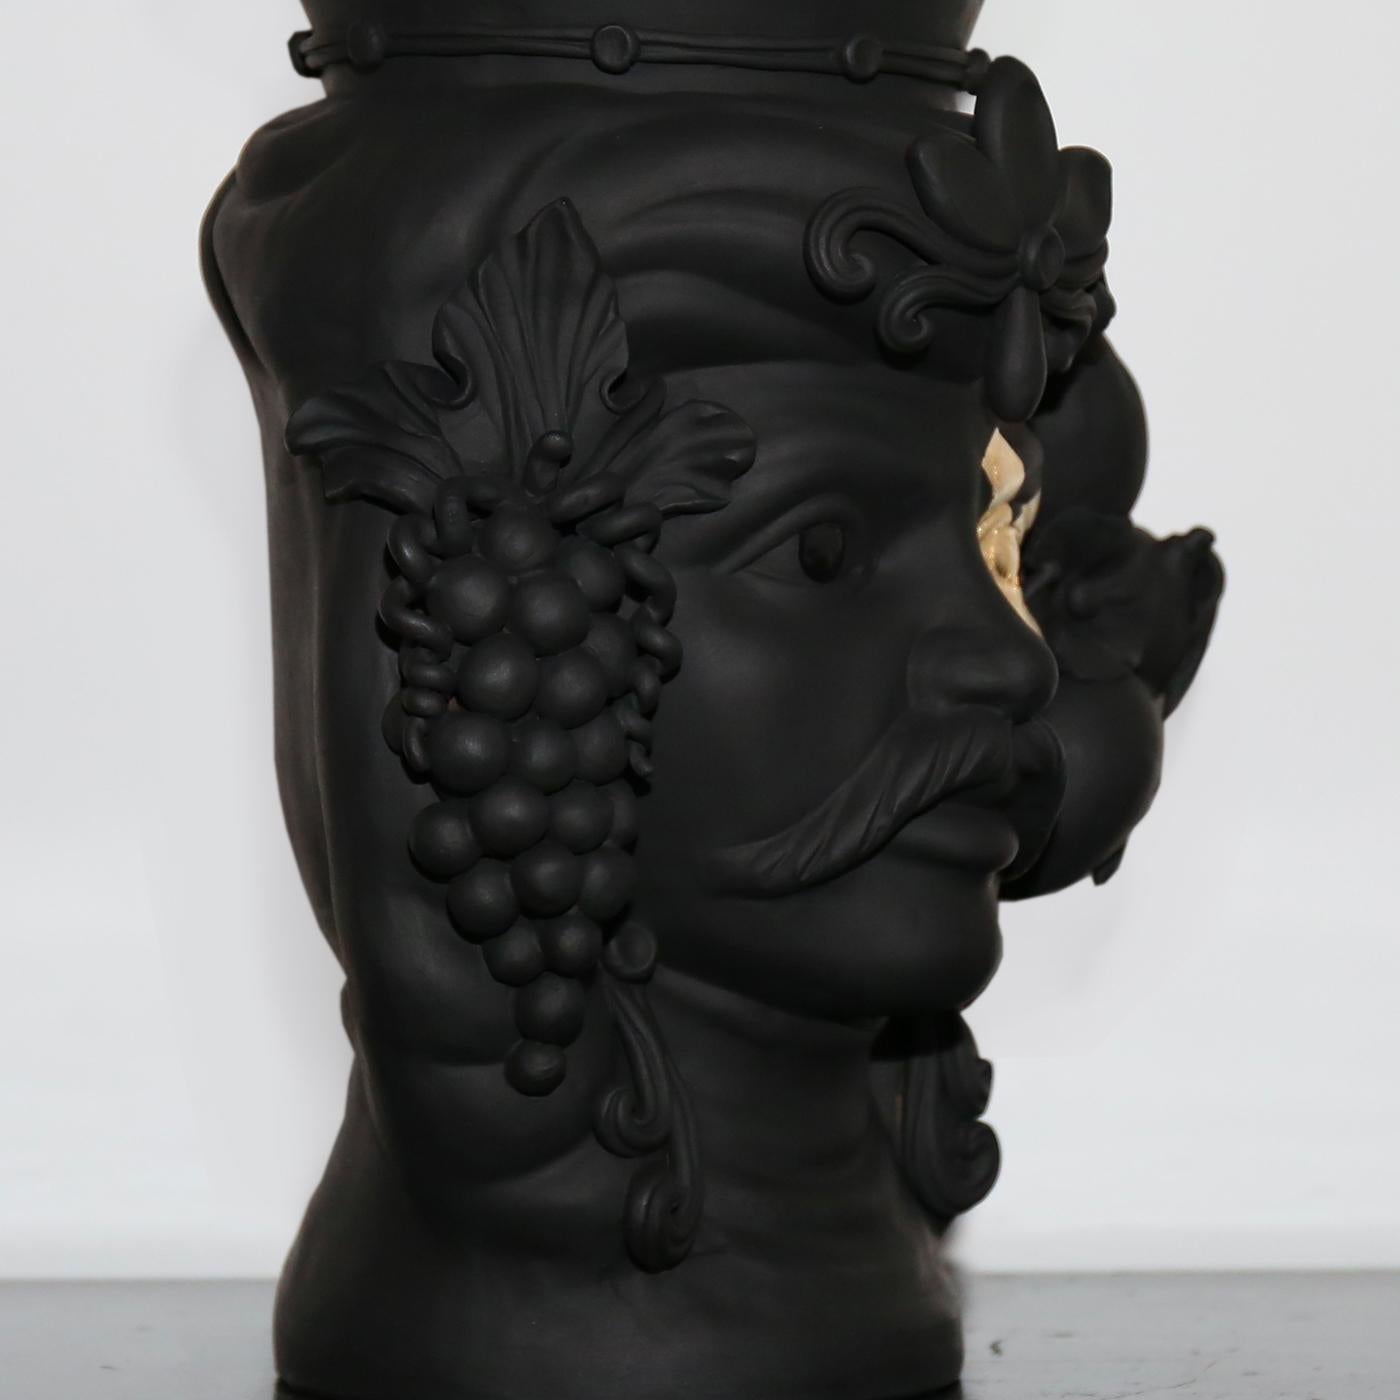 Pièce de décoration fonctionnelle remarquable, ce vase anthropomorphe représentant un Maure témoigne de la richesse de l'histoire artisanale et du patrimoine artistique de la Sicile. Entièrement réalisée à la main et finie avec une glaçure noire